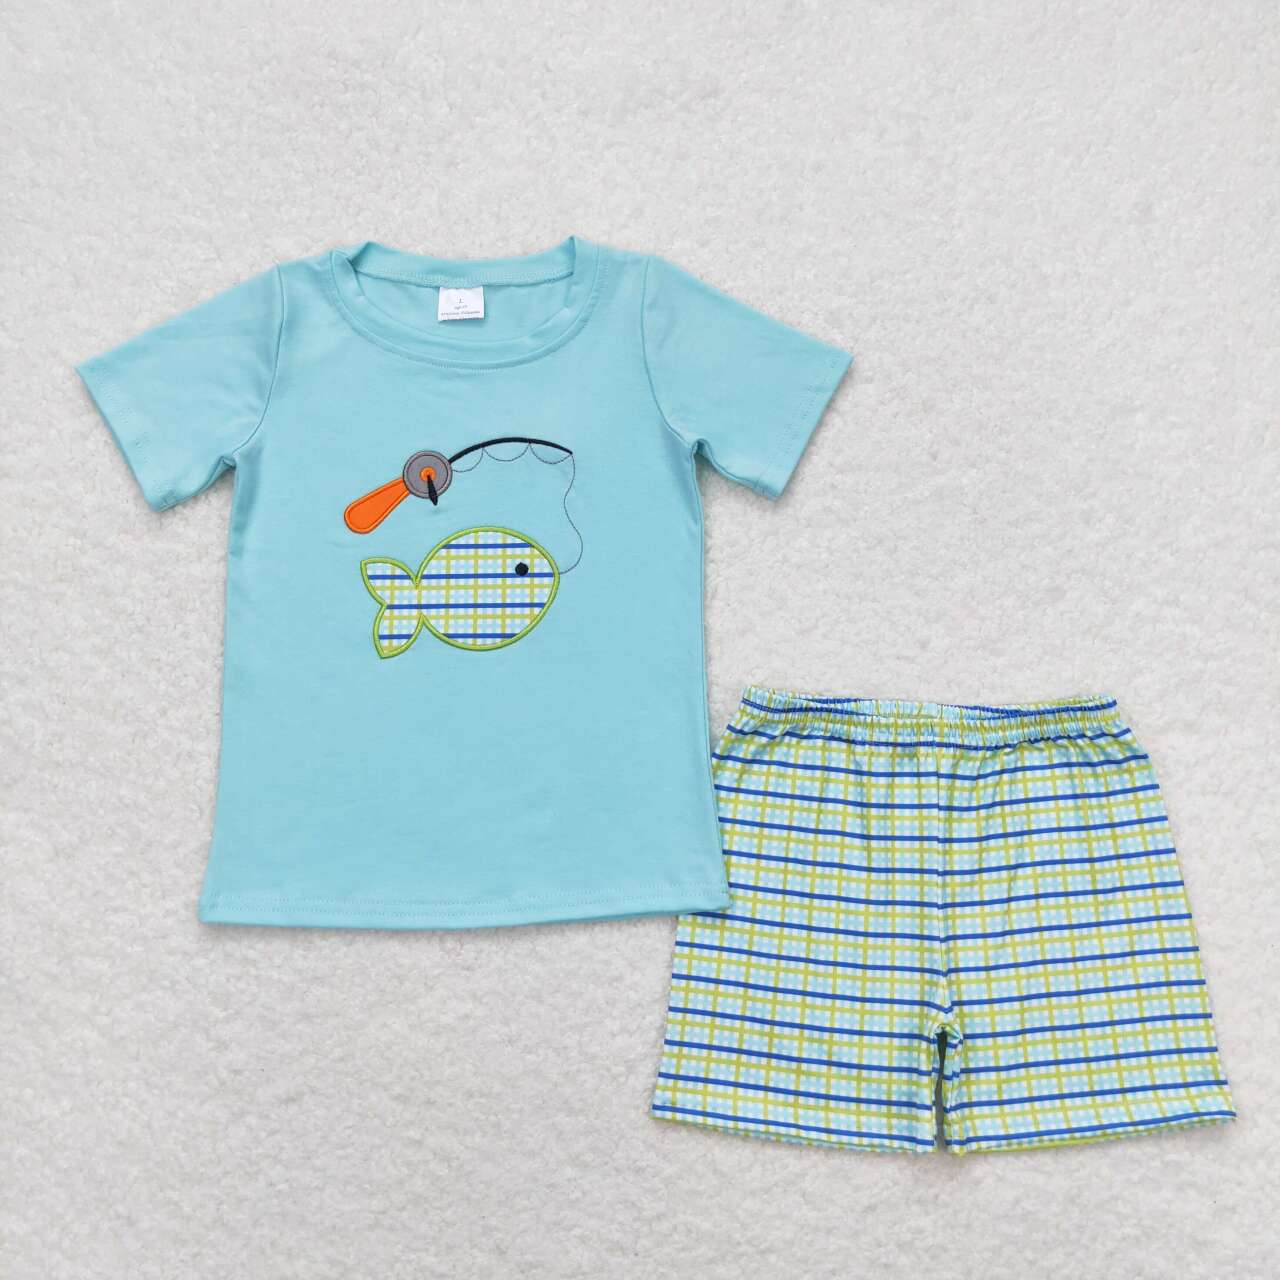 go fishing embroidery boys shorts set summer clothing